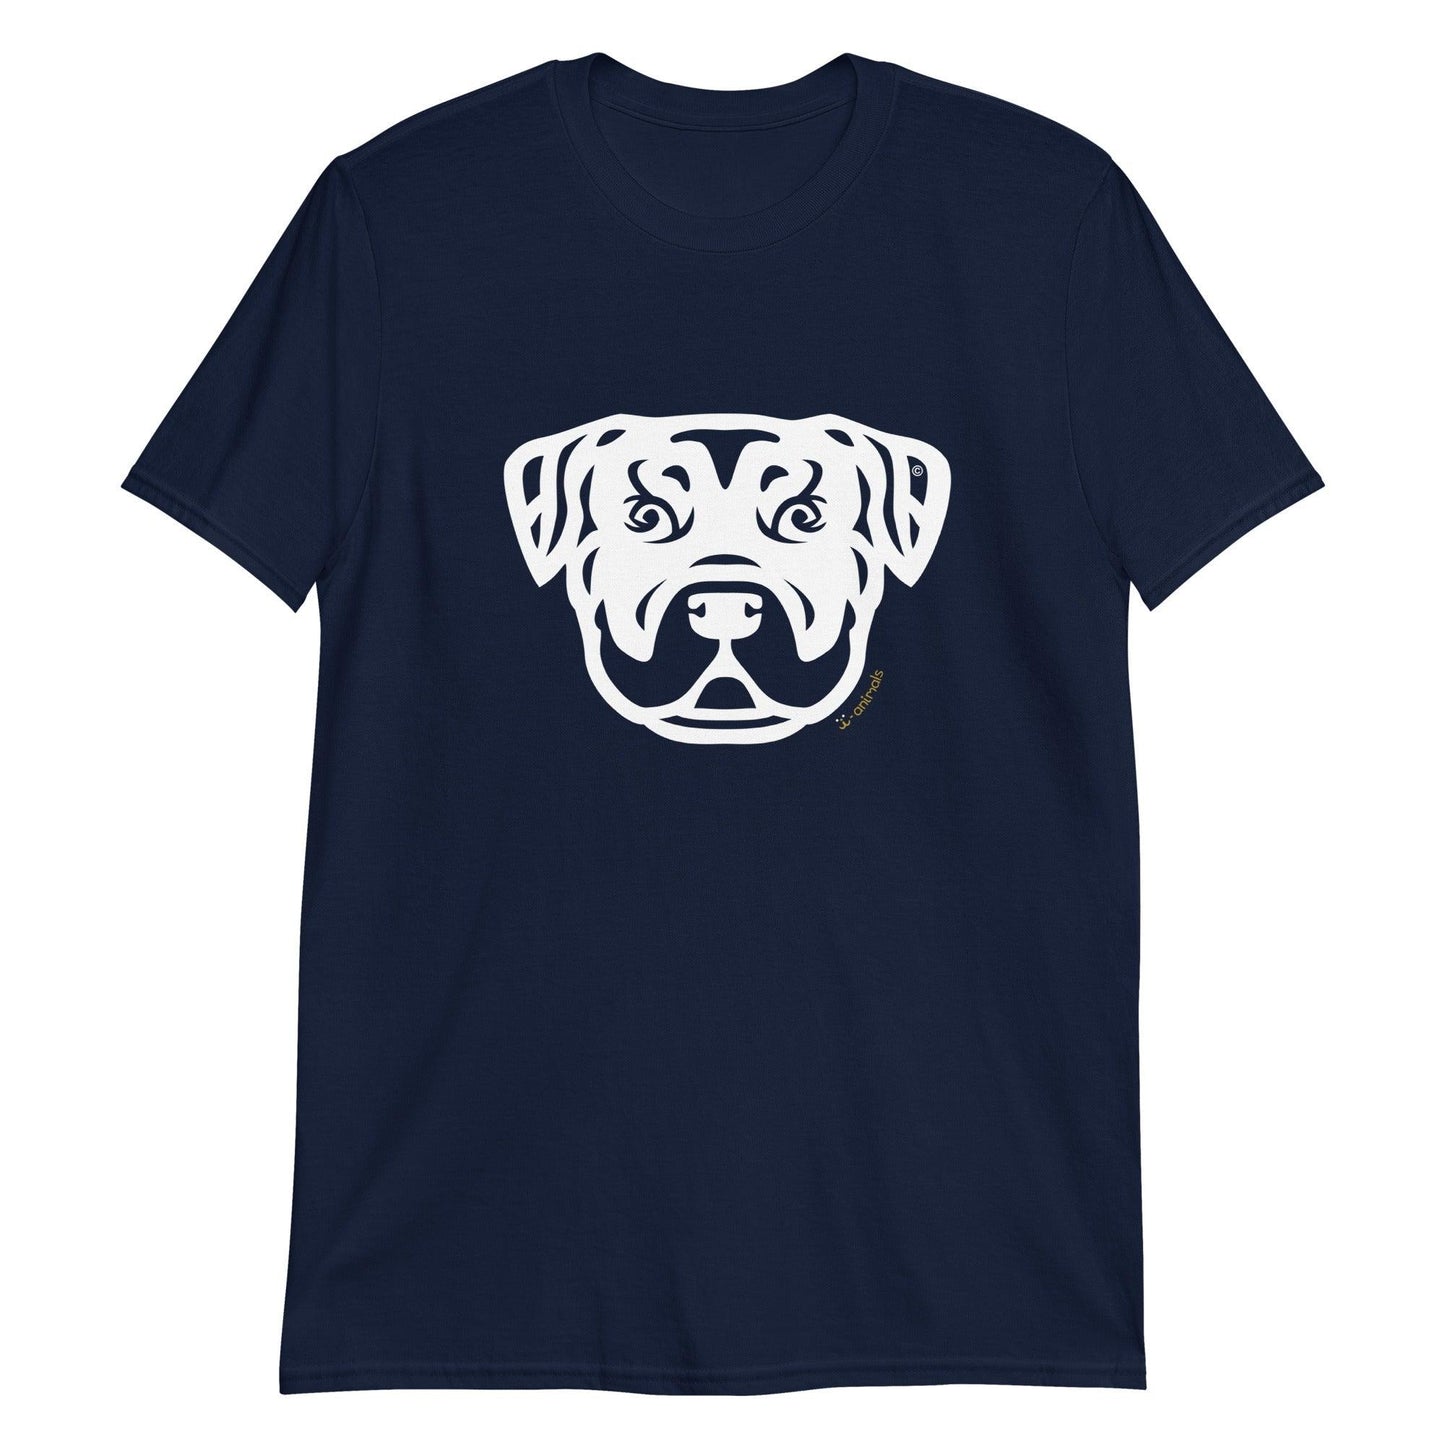 Camiseta unissex de manga curta - Rottweiler - Tribal i-animals